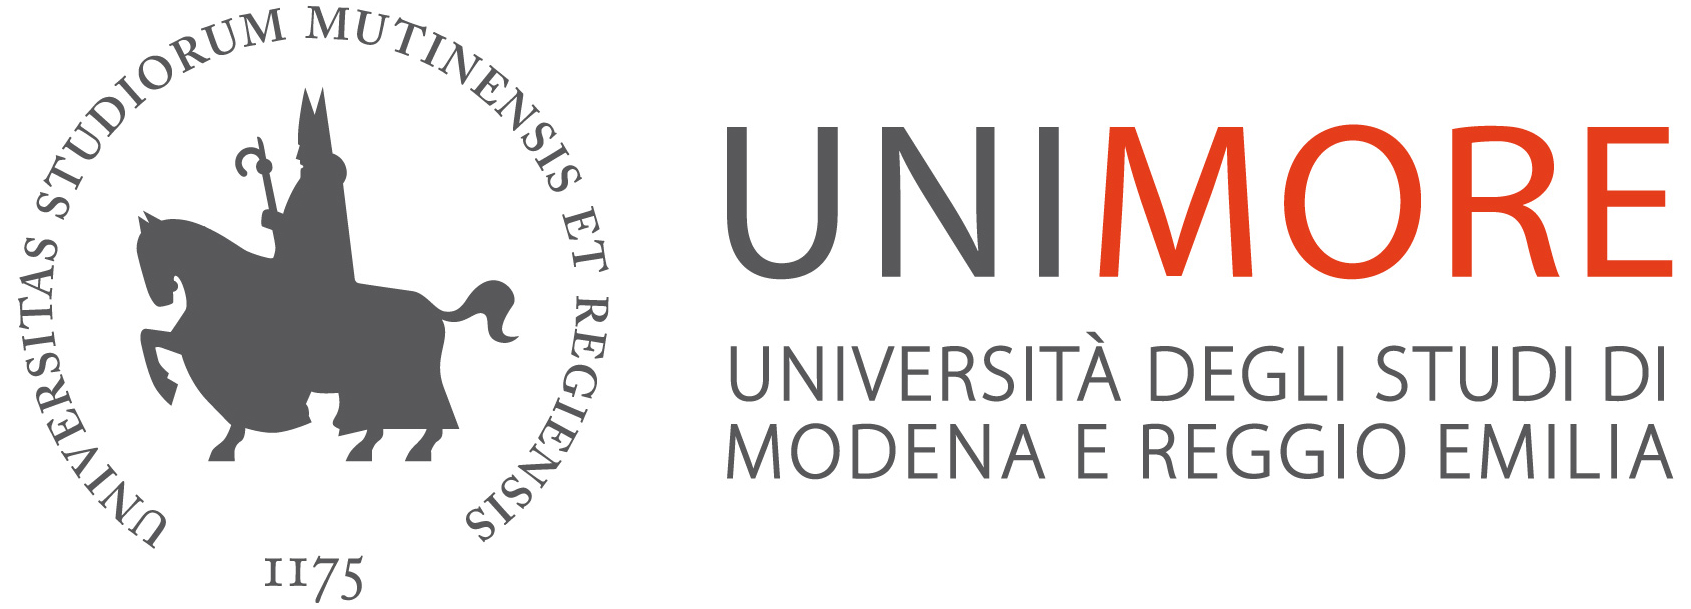 UNIMORE  Università degli Studi di Modena e Reggio Emilia